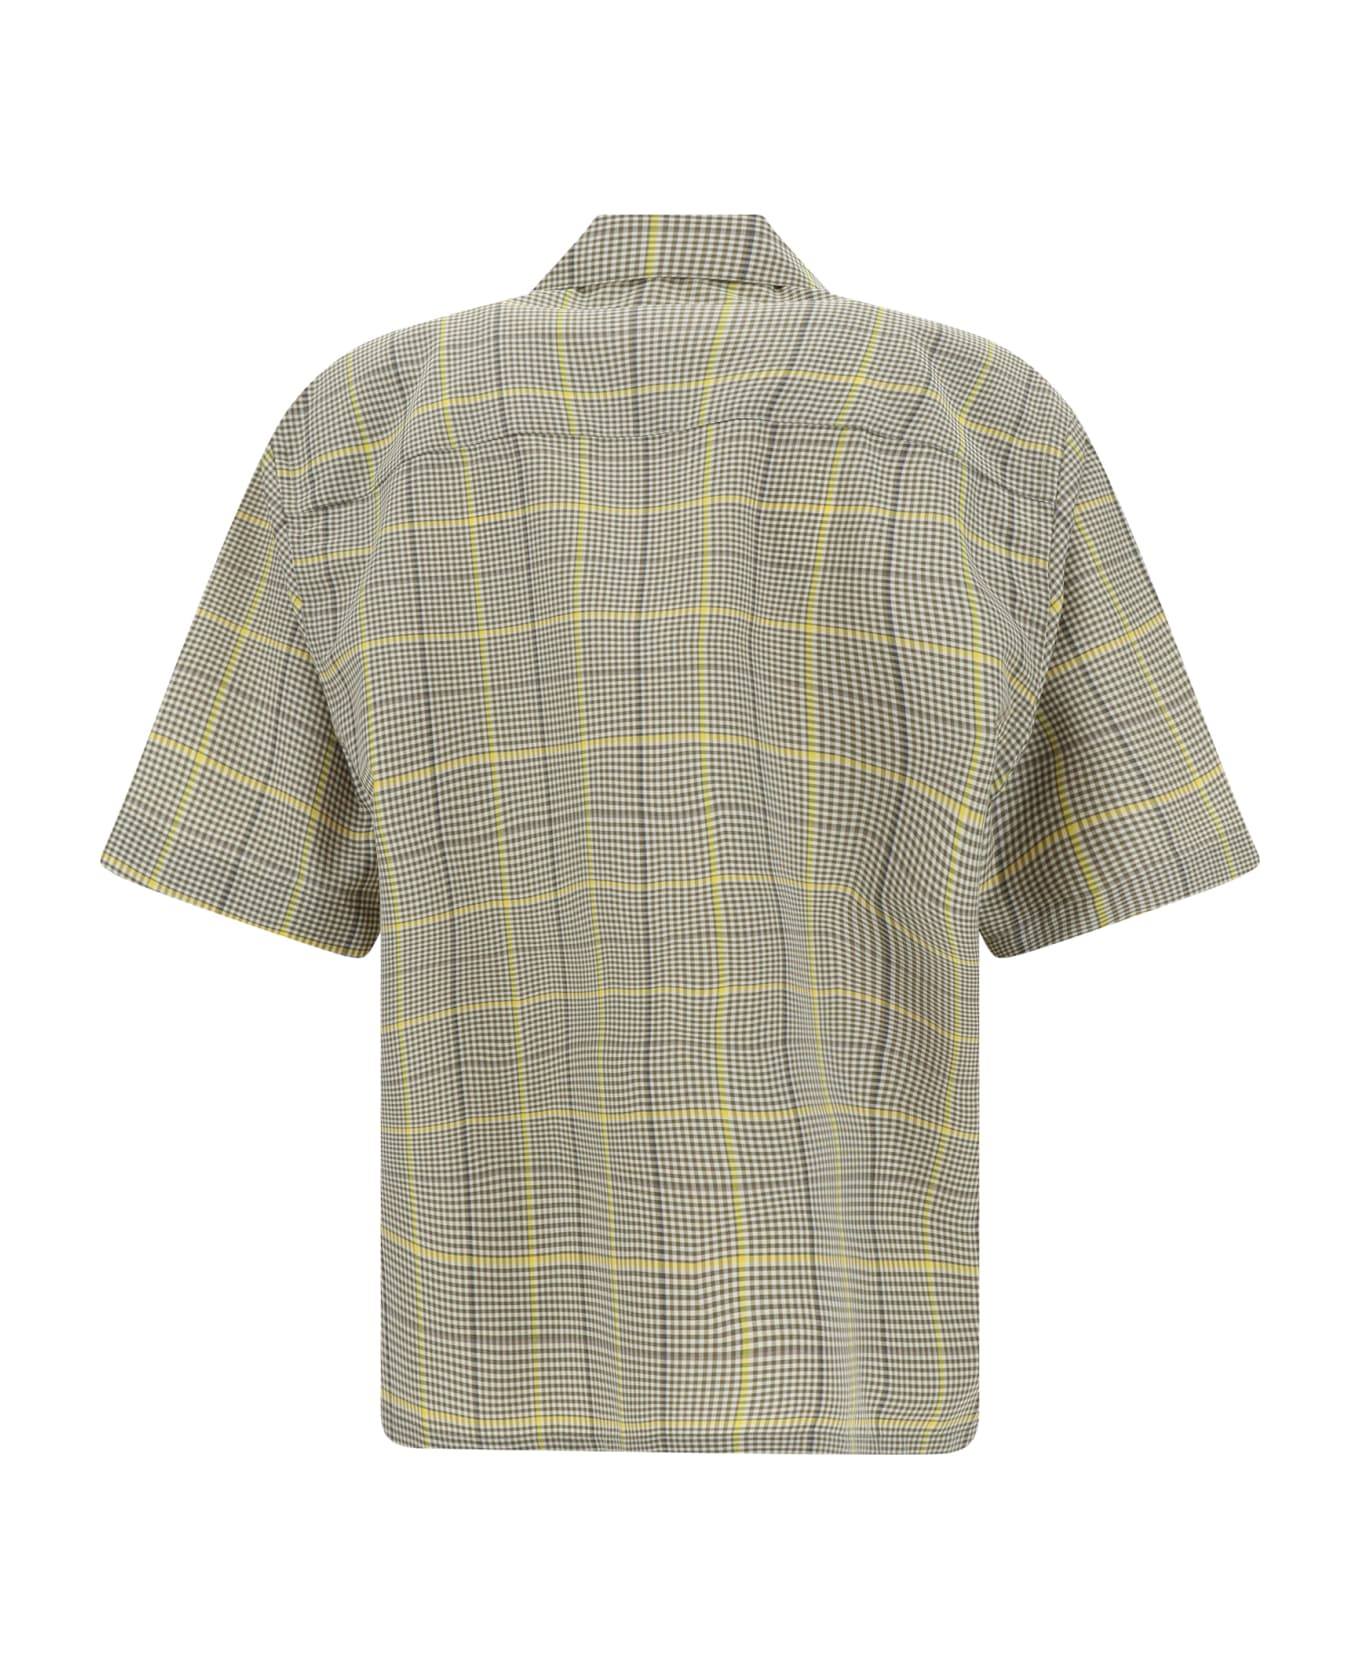 Marni Shirt - India Yellow シャツ